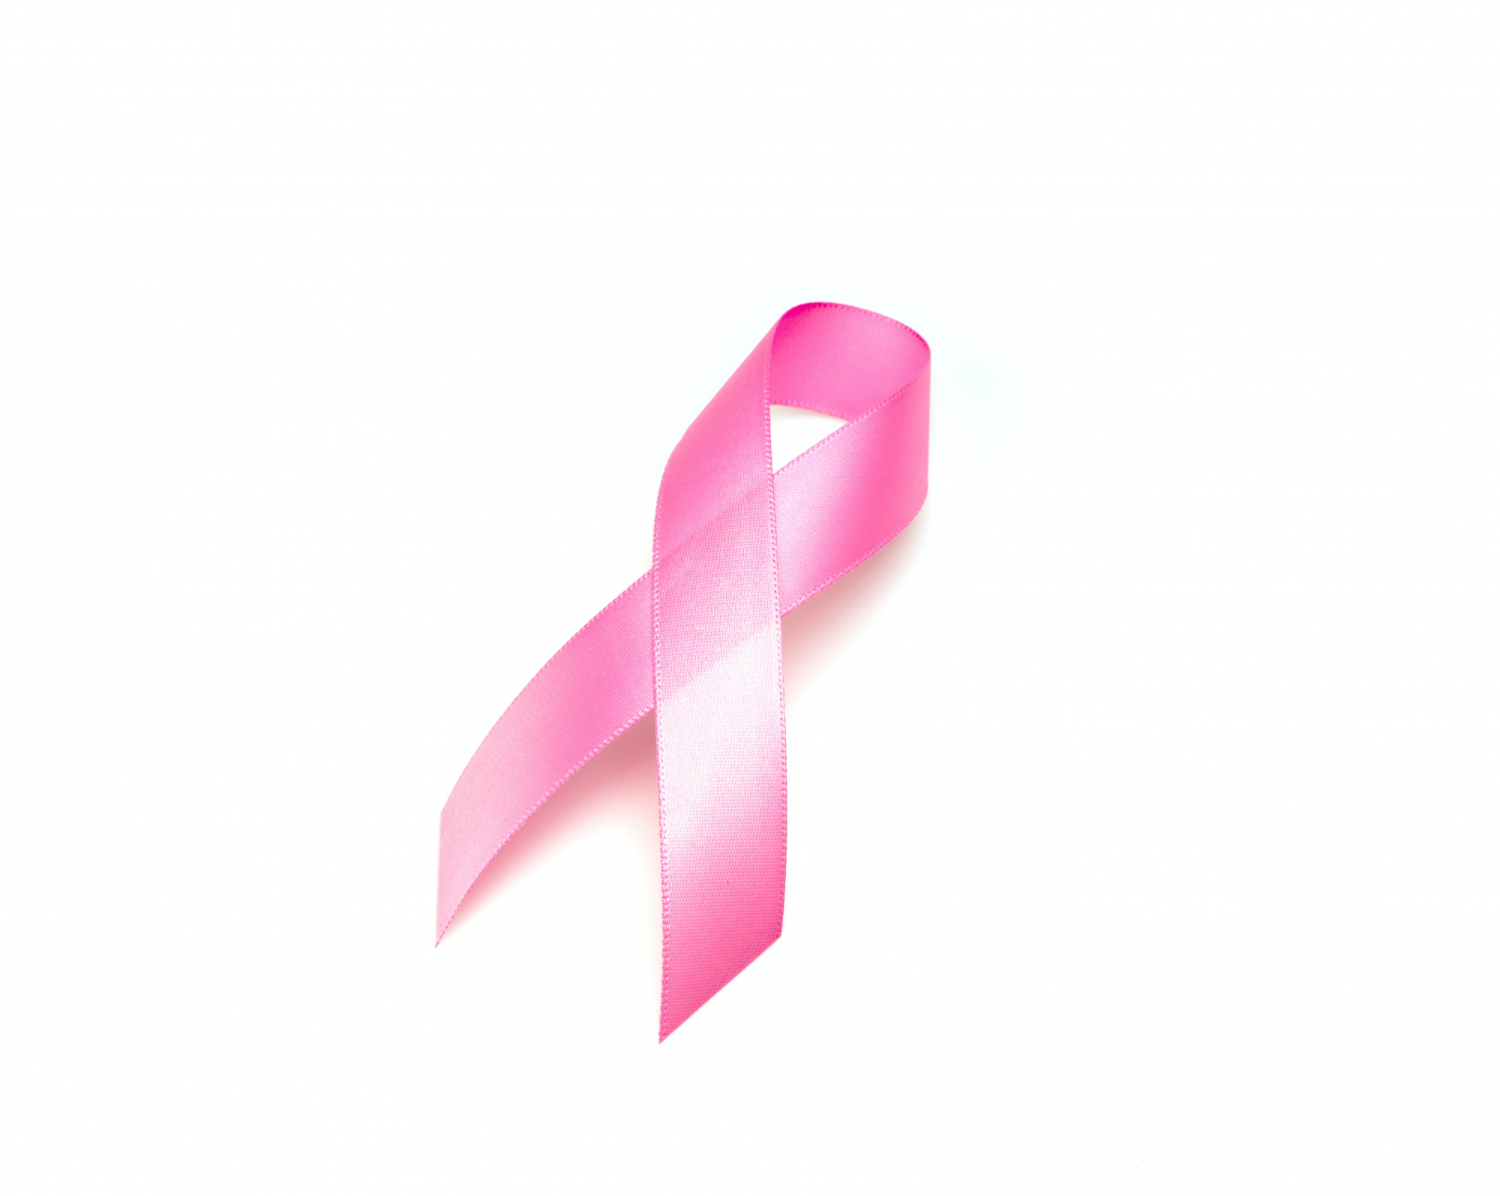 عدد جلسات الكيماوي لسرطان الثدي المرحلة الأولى